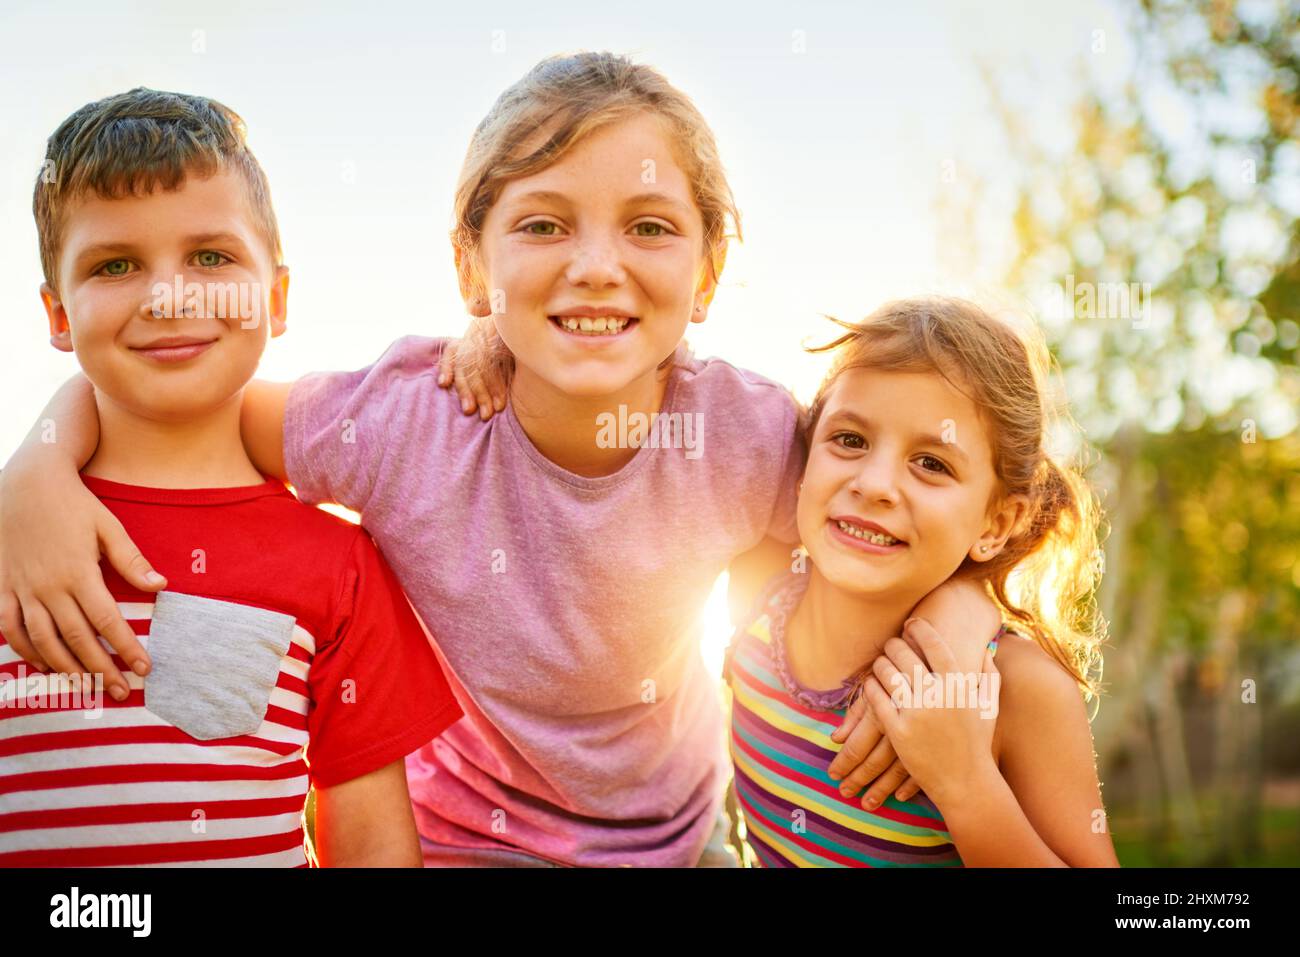 Es ist immer eine tolle Zeit, wenn zusammen waren. Porträt einer Gruppe von kleinen Kindern, die im Freien zusammen spielen. Stockfoto